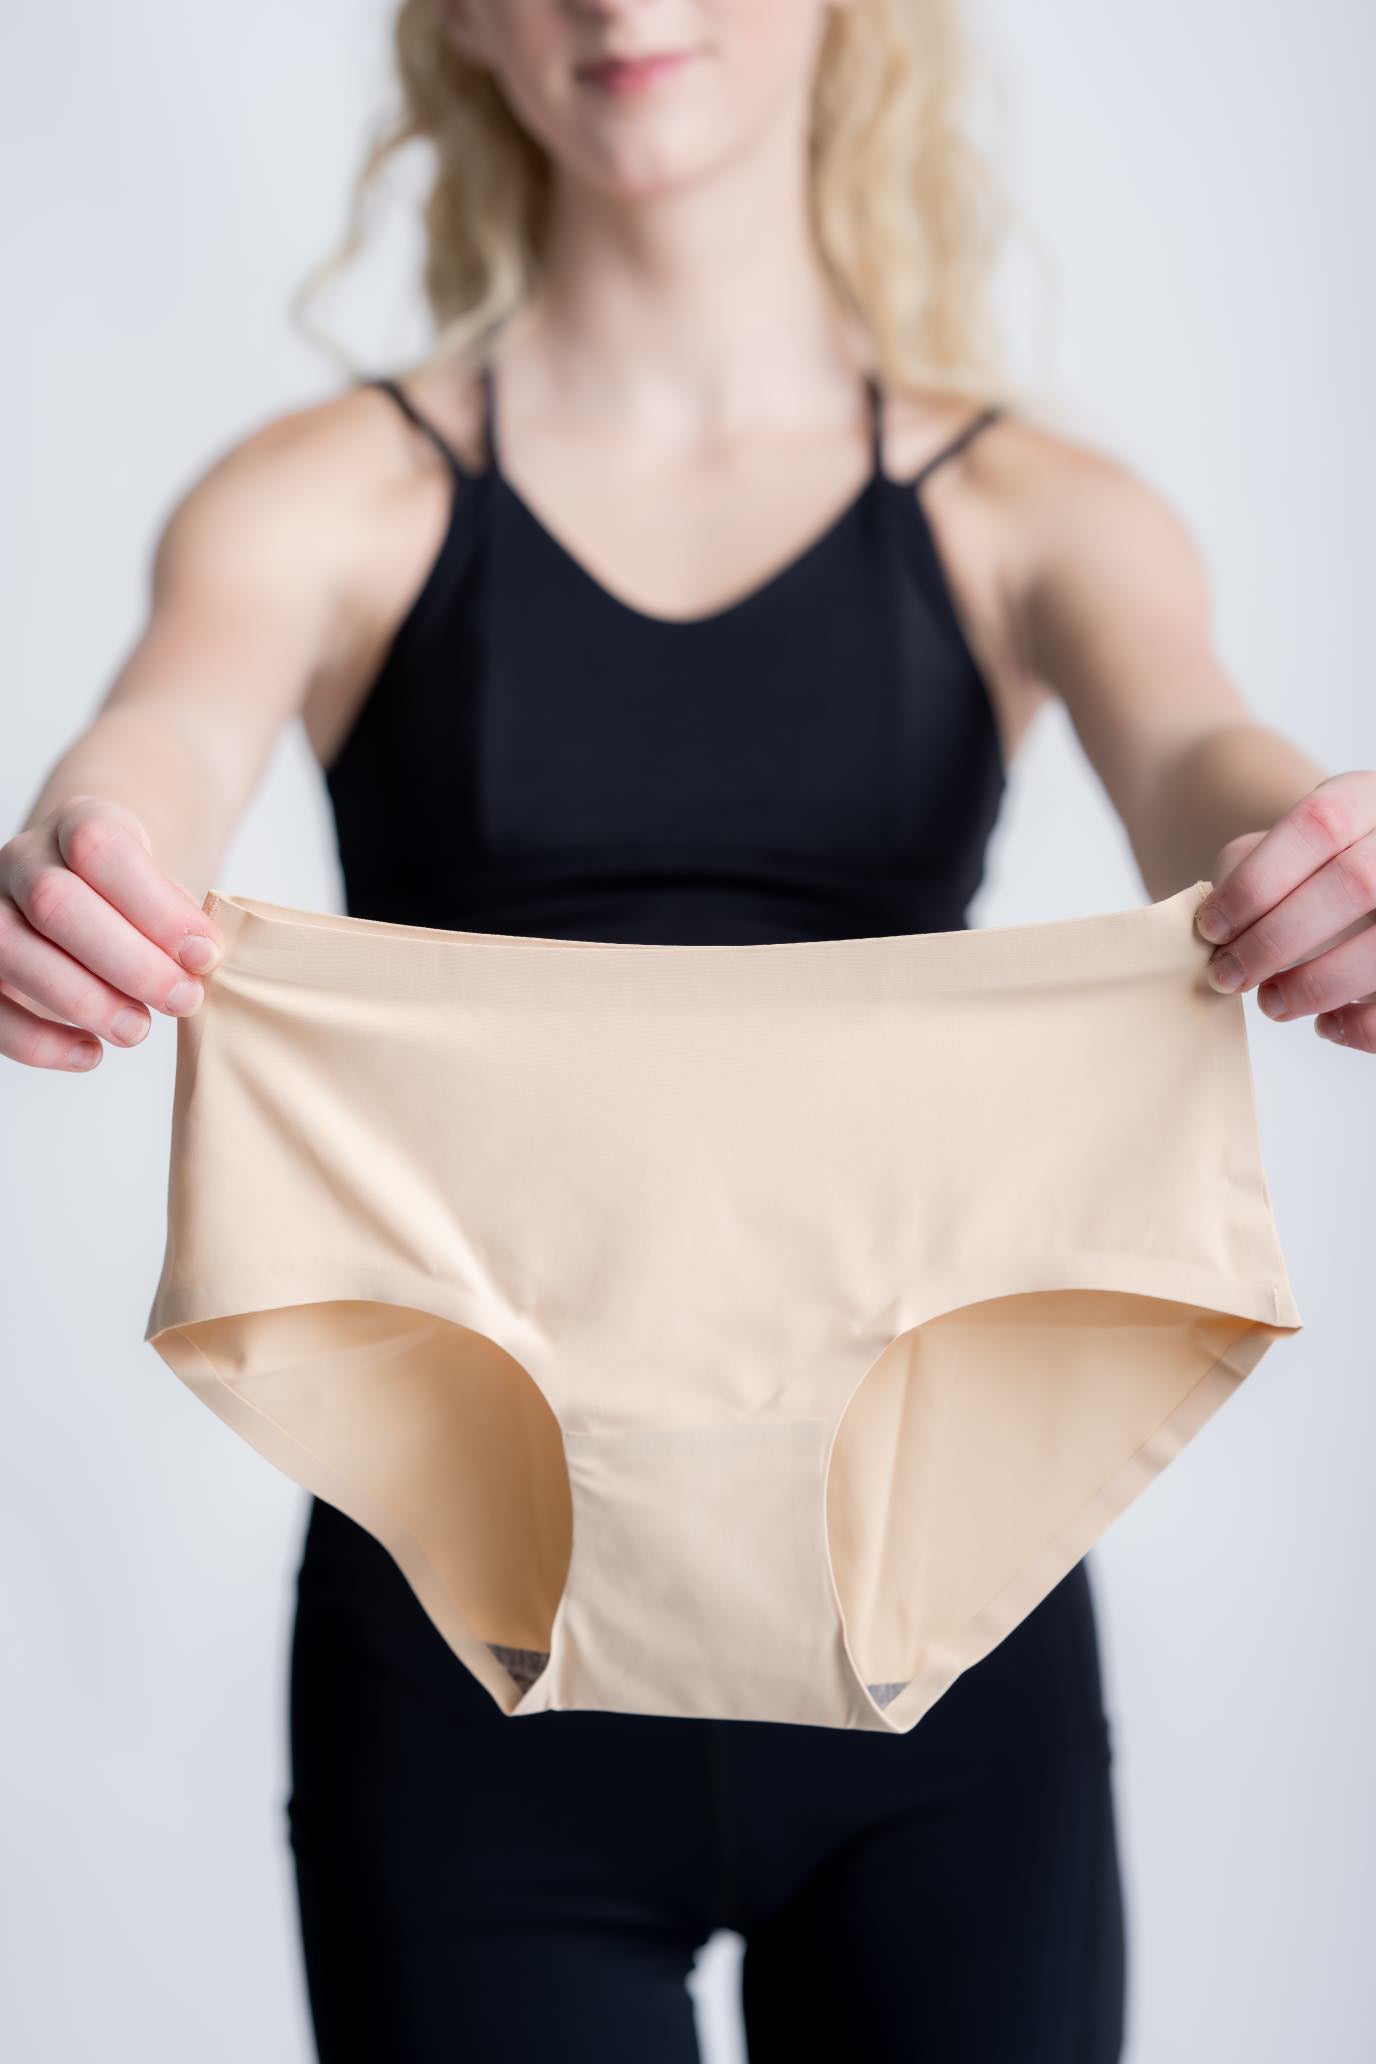 Women's Workout Underwear & Seamless Underwear